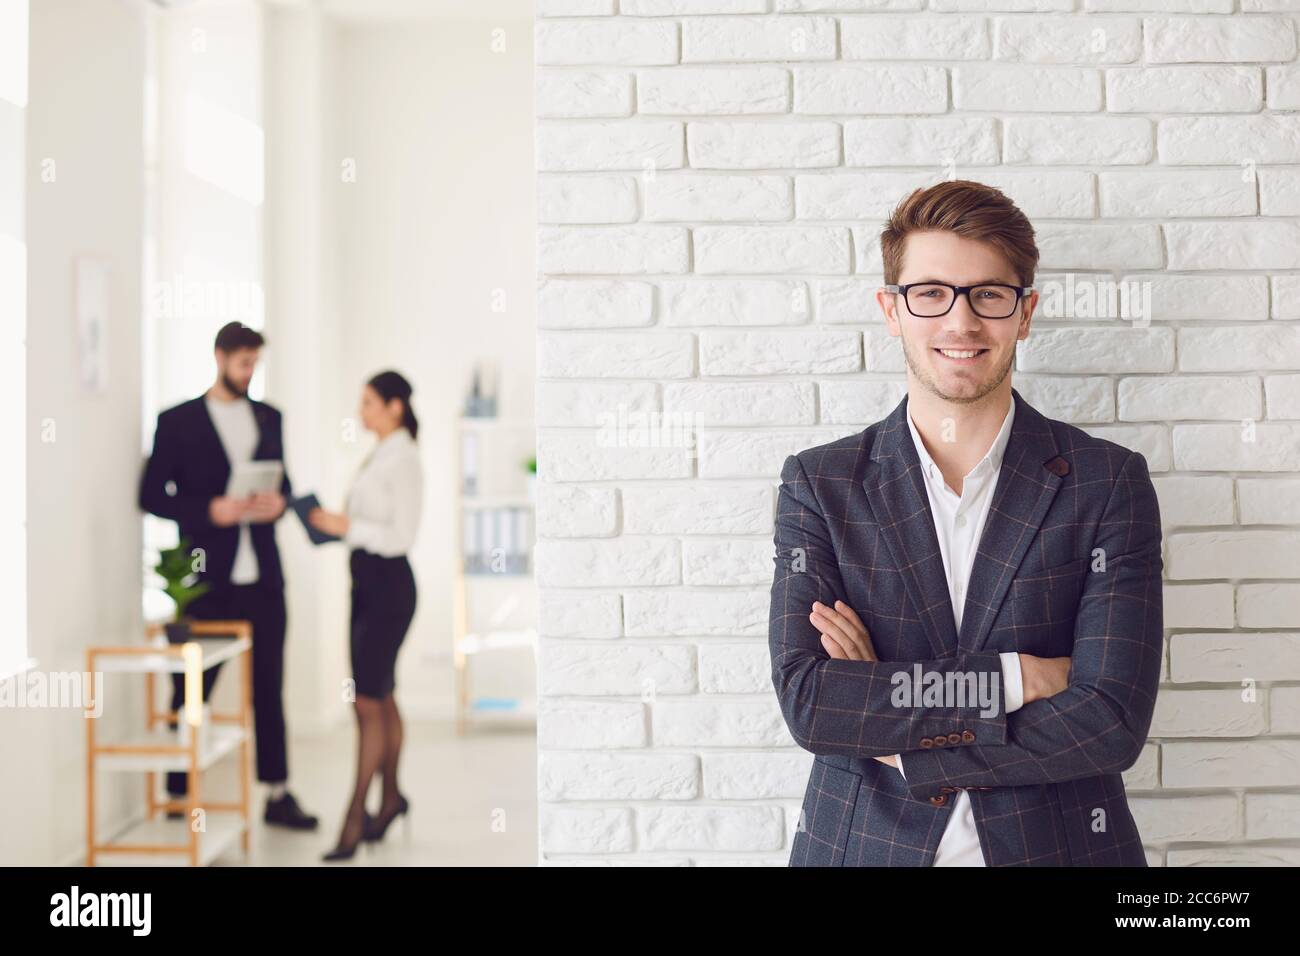 Lächelnder positiver Geschäftsmann in legerer Kleidung, der in einem weißen Büro an einer weißen Wand steht. Stockfoto